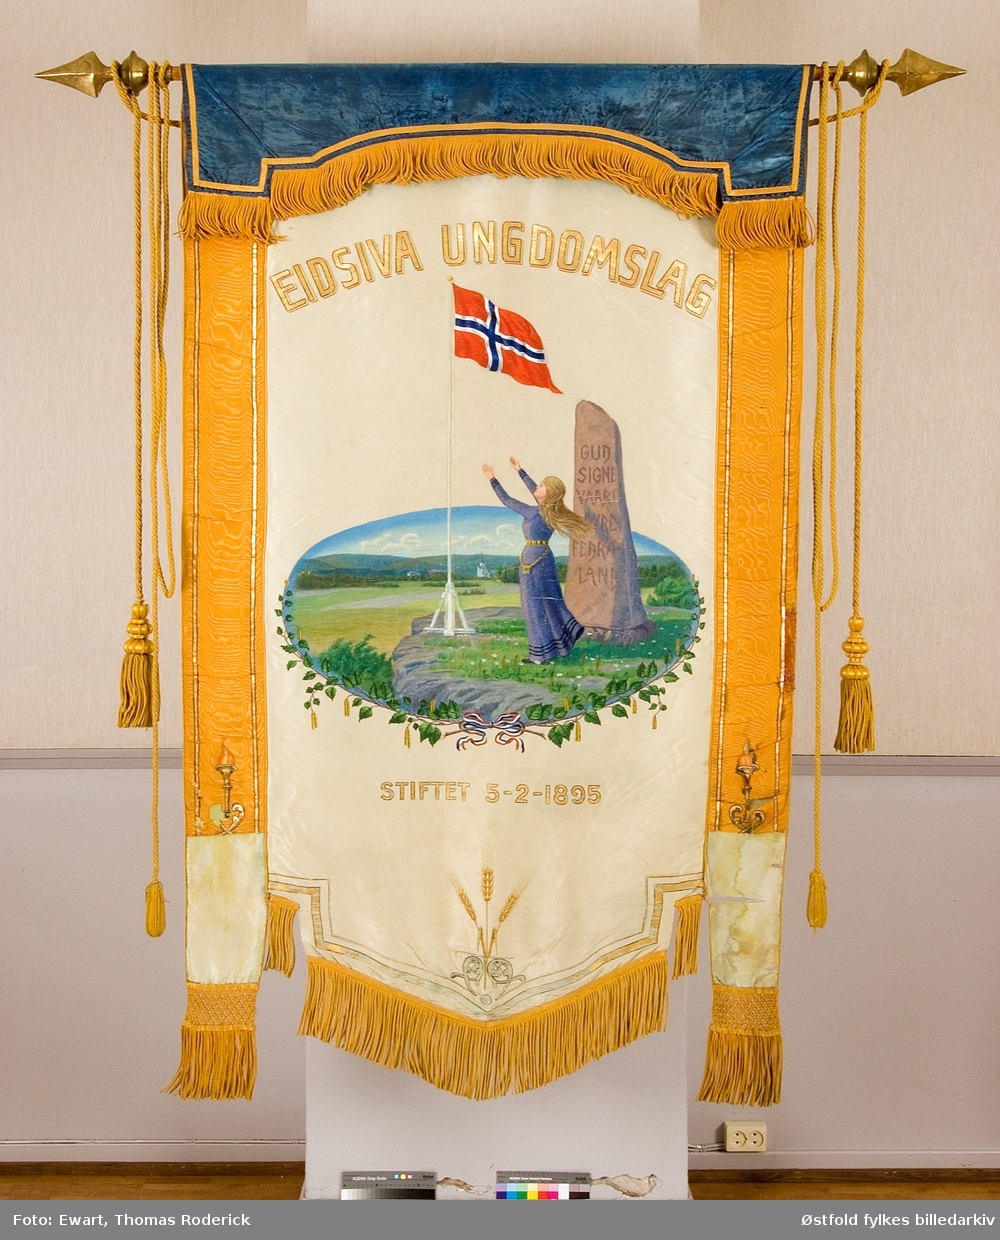 Fane til Eidsiva Ungdomslag stiftet 3. februar 1895. Forside og bakside.
Påskrift på bauta i motiv:  Gud signe vaart dyre fedreland.